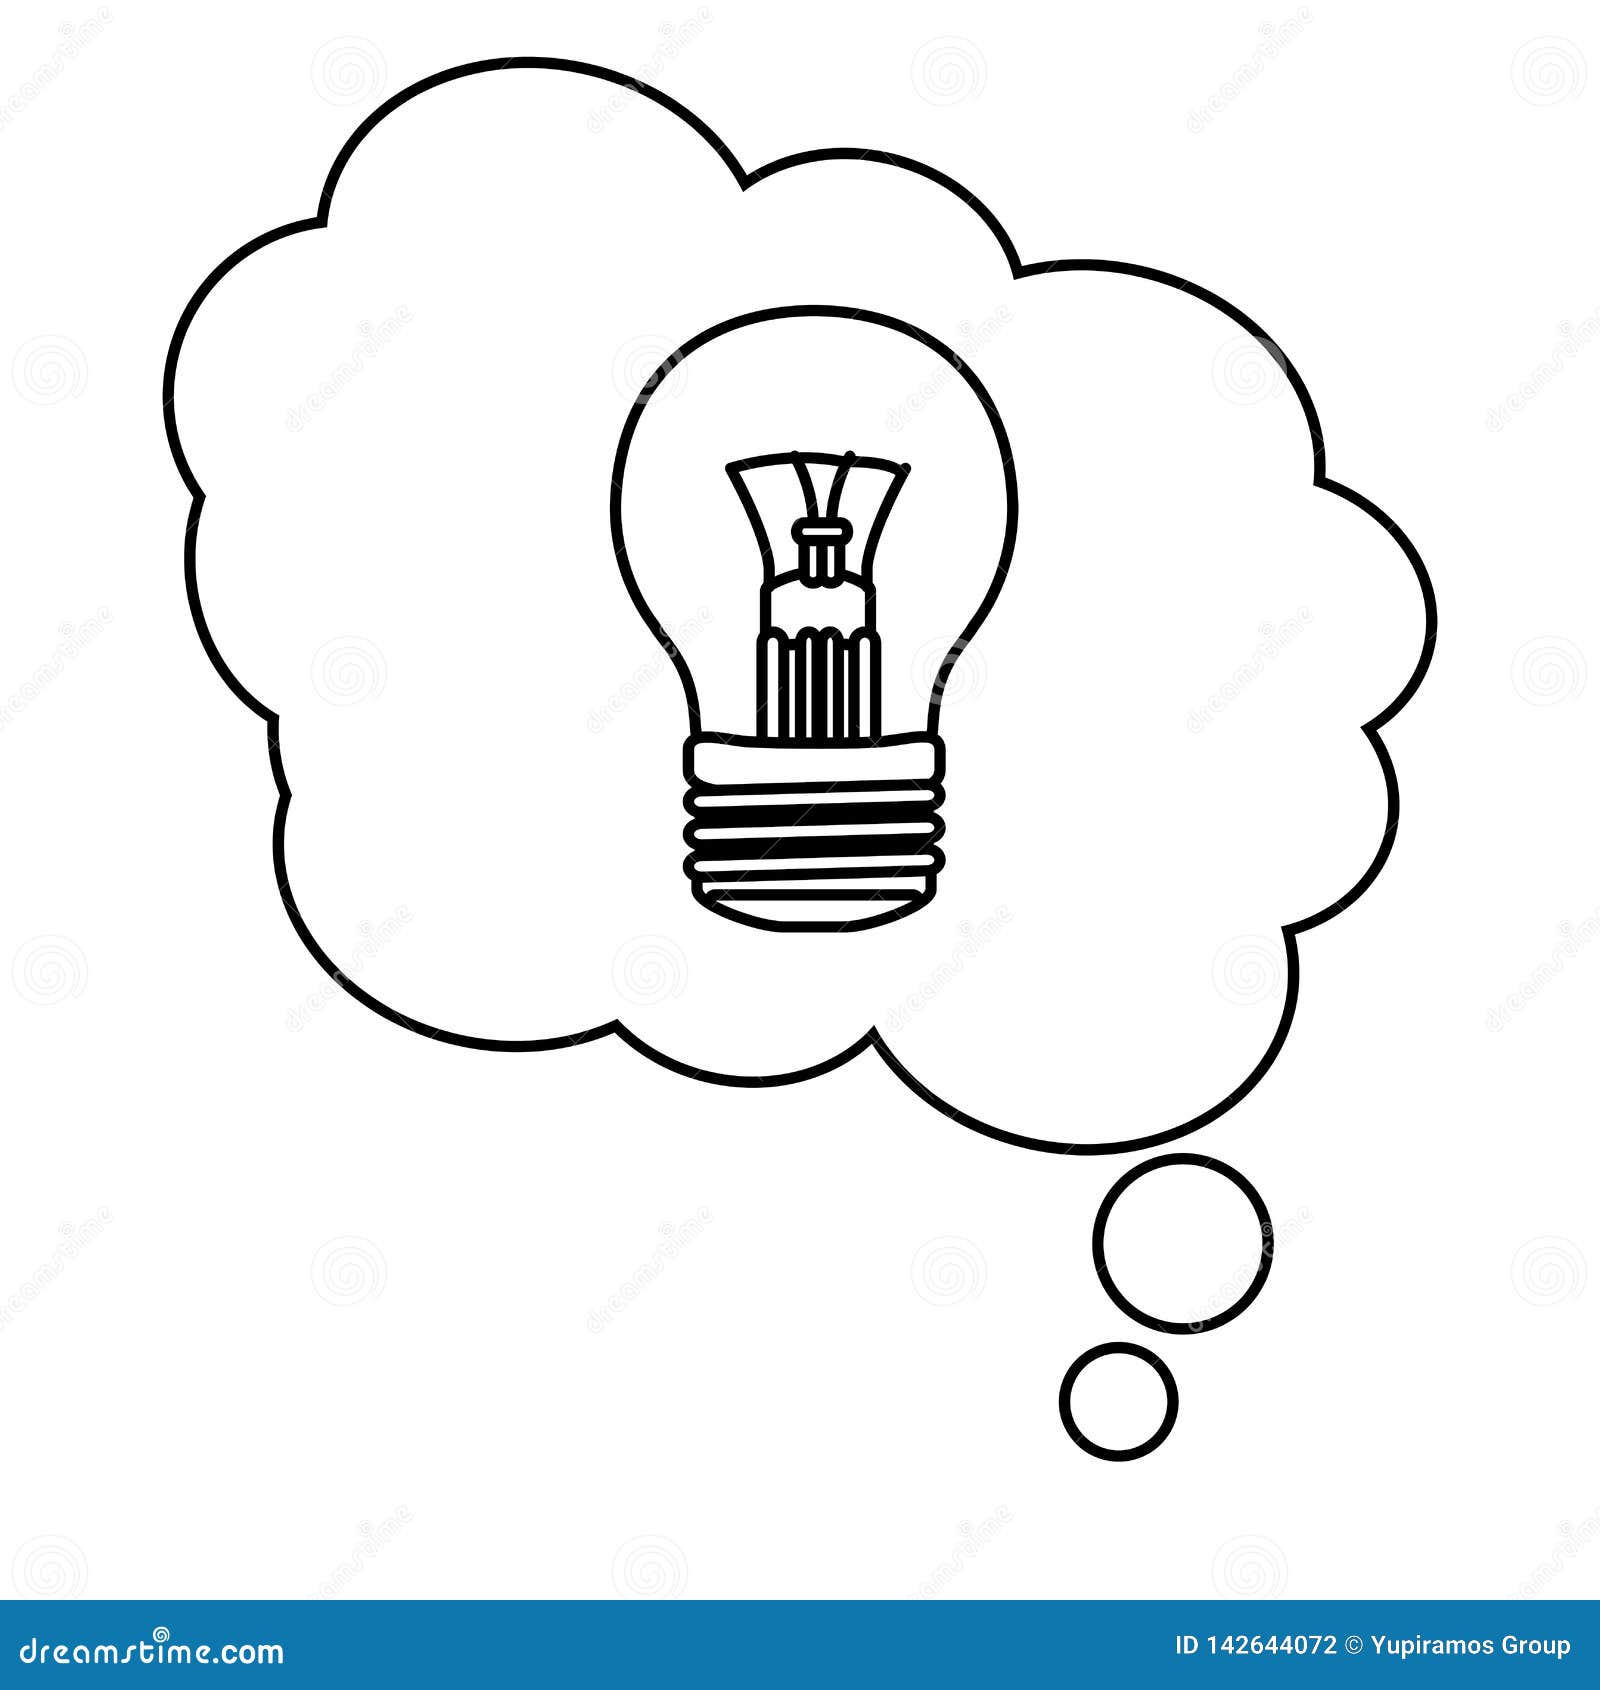 Light bulb idea cartoon stock vector. Illustration of black - 142644072